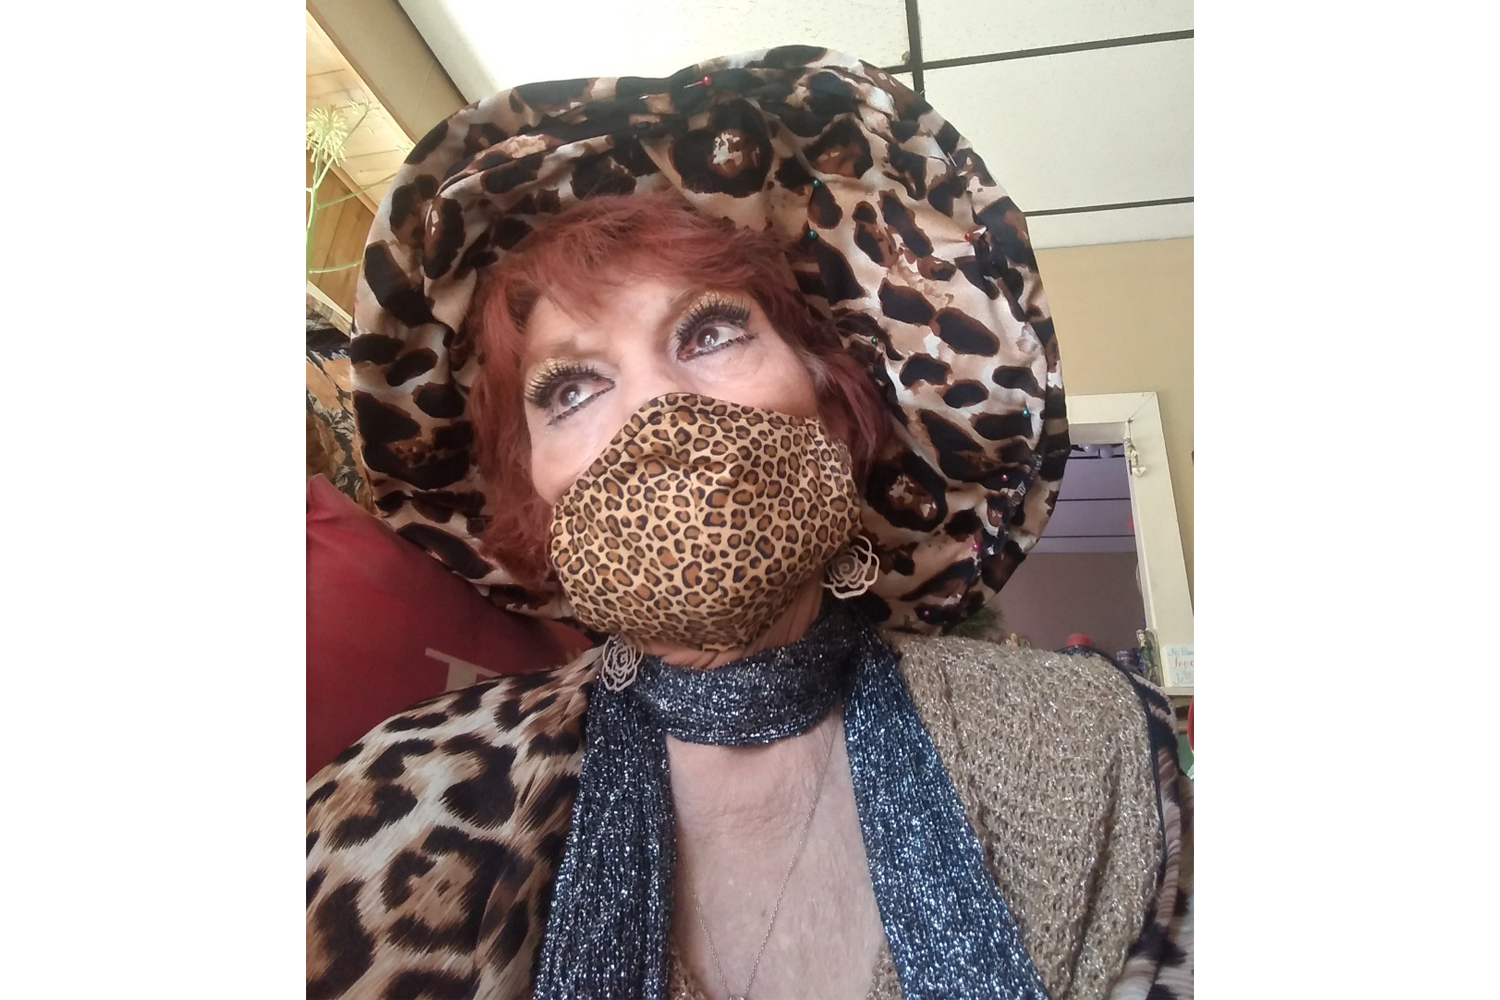 Bonita Borst in her cheetah-print mask.